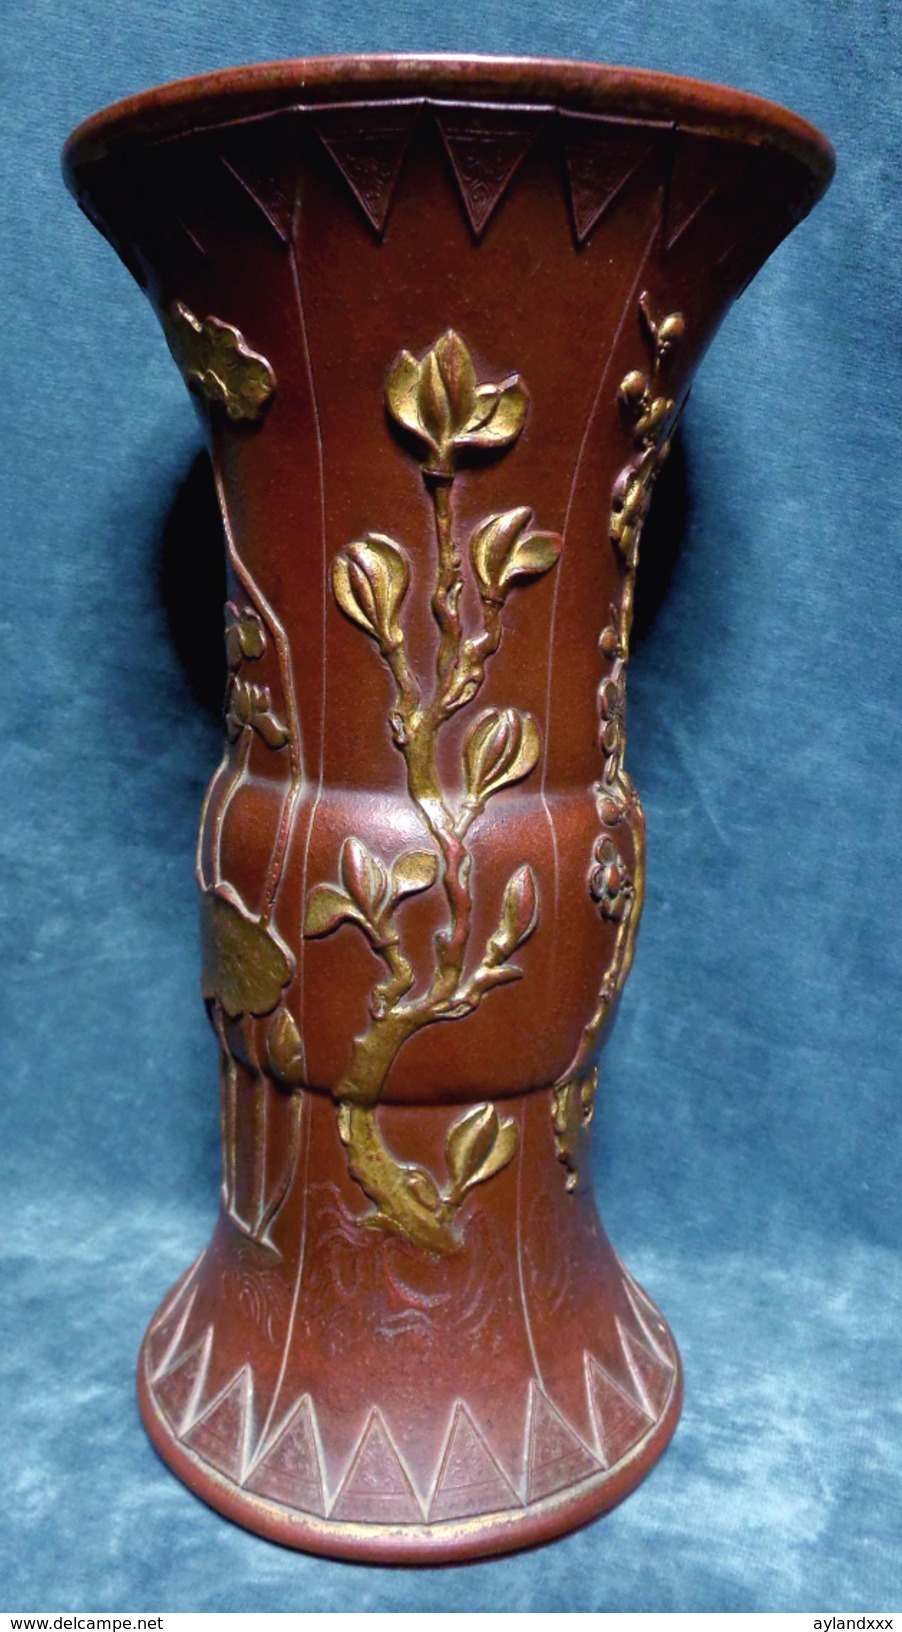 CINA (China): Rare Chinese Yixing Vase, Kangxi Period - Arte Orientale